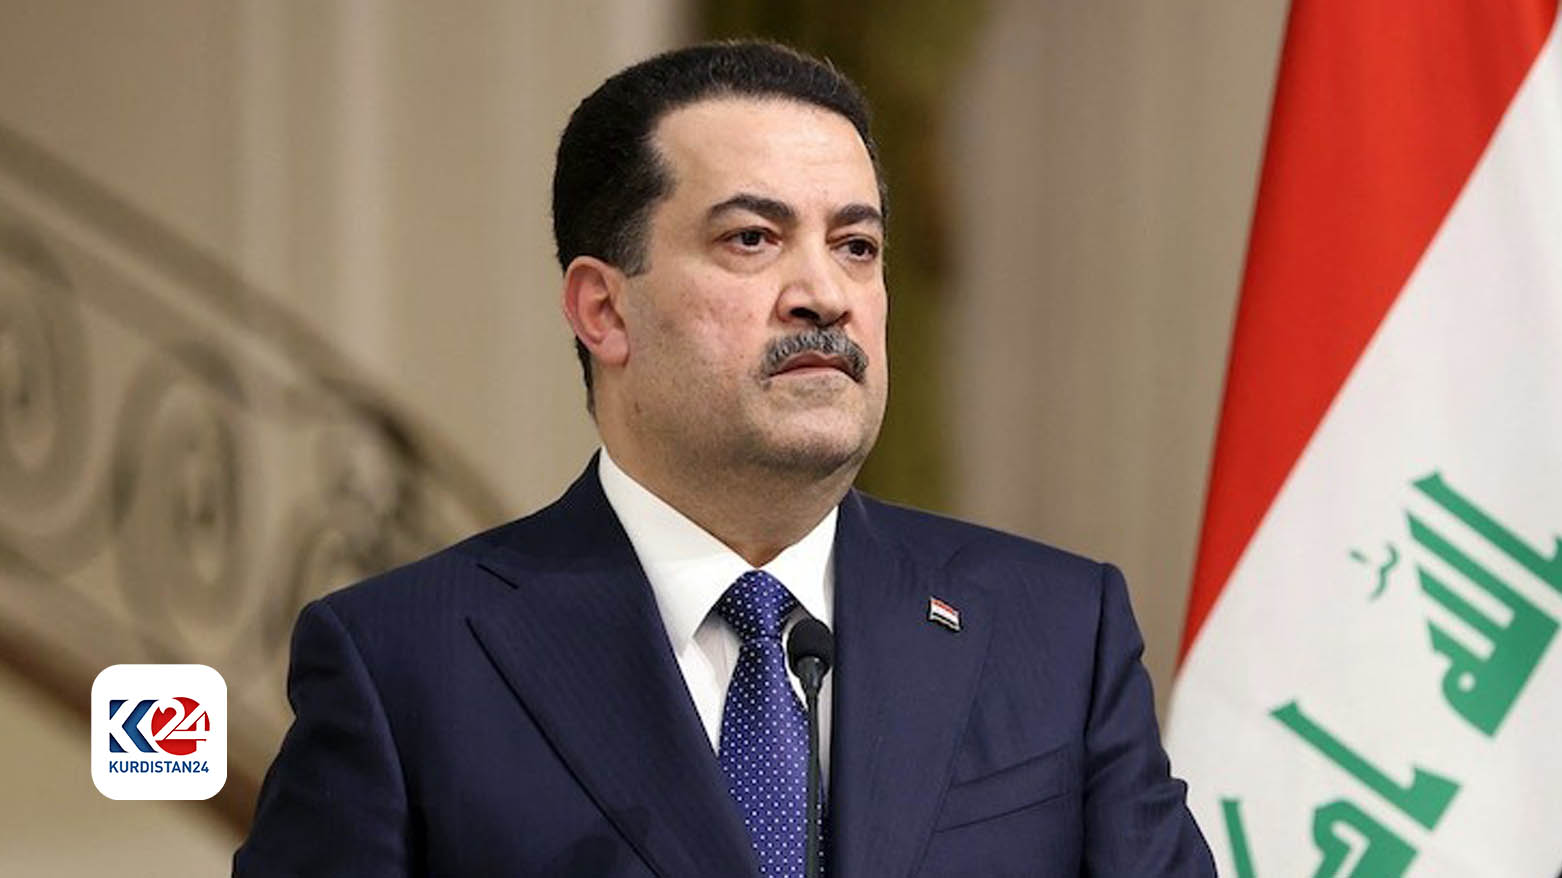 محمد شیاع السودانی، نخست وزیر عراق